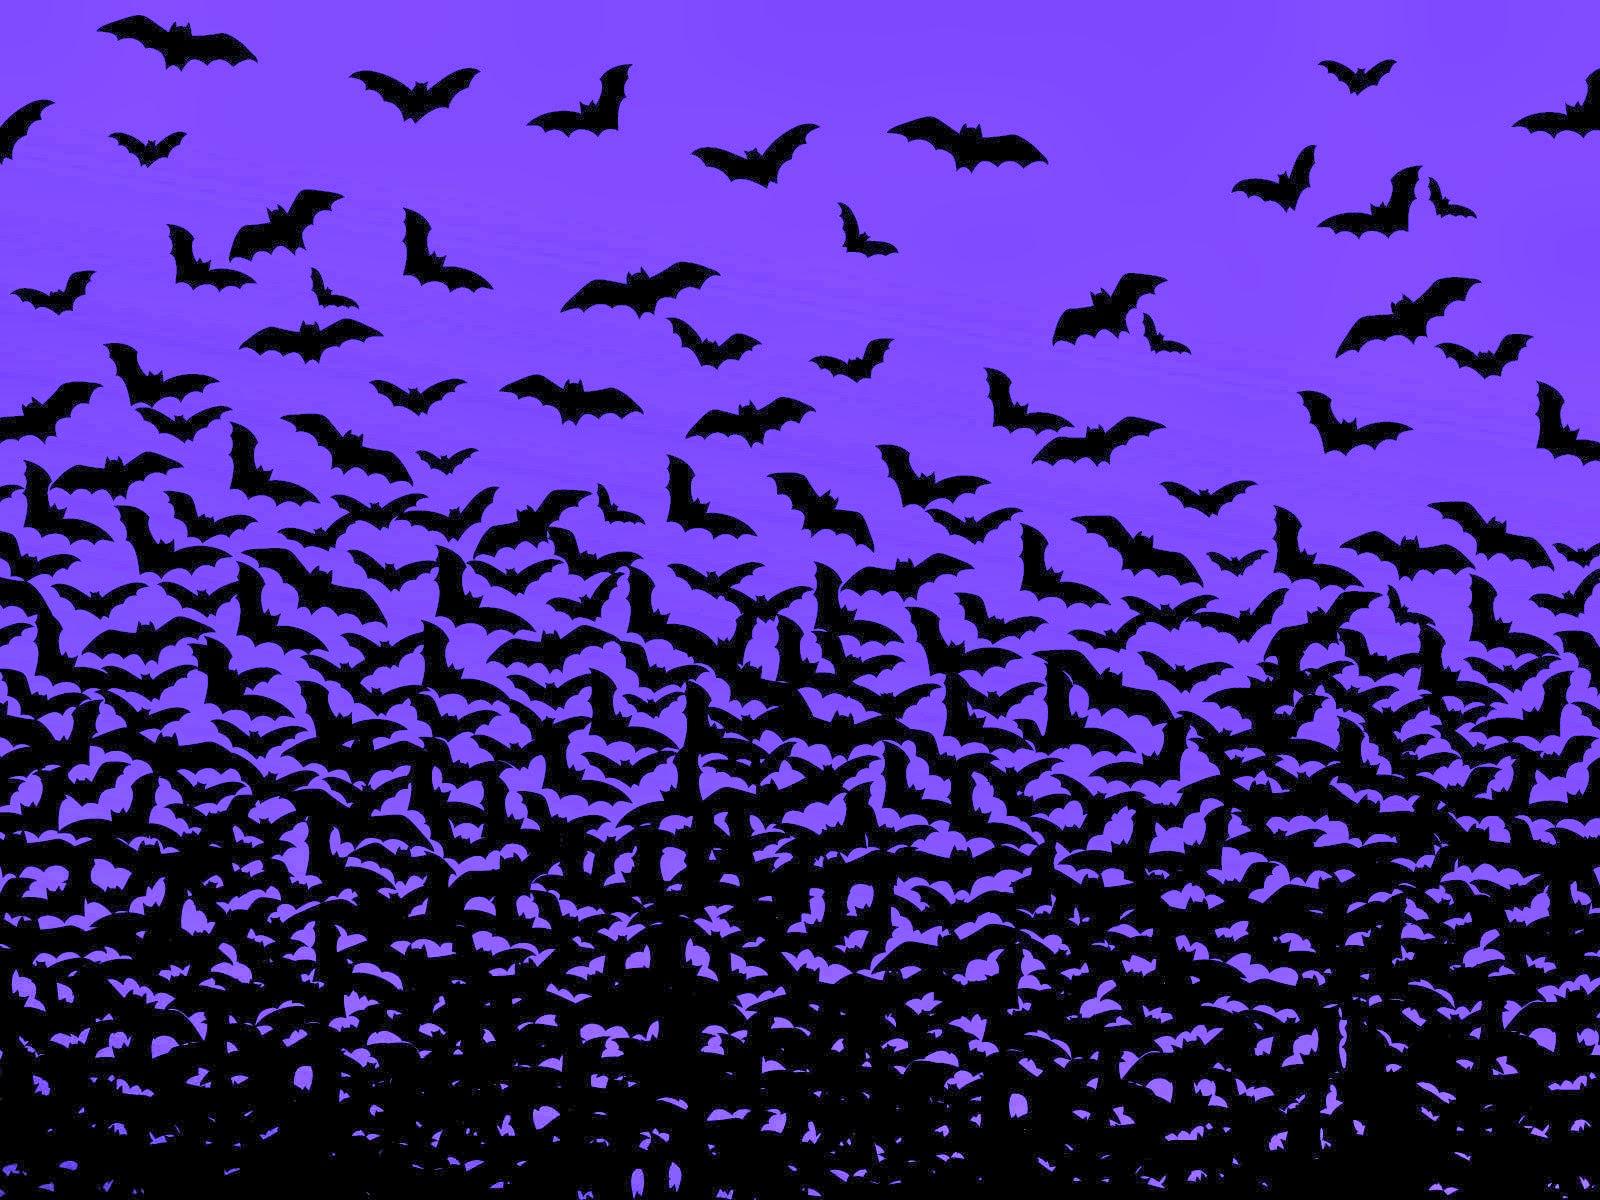 Bat Wallpaper